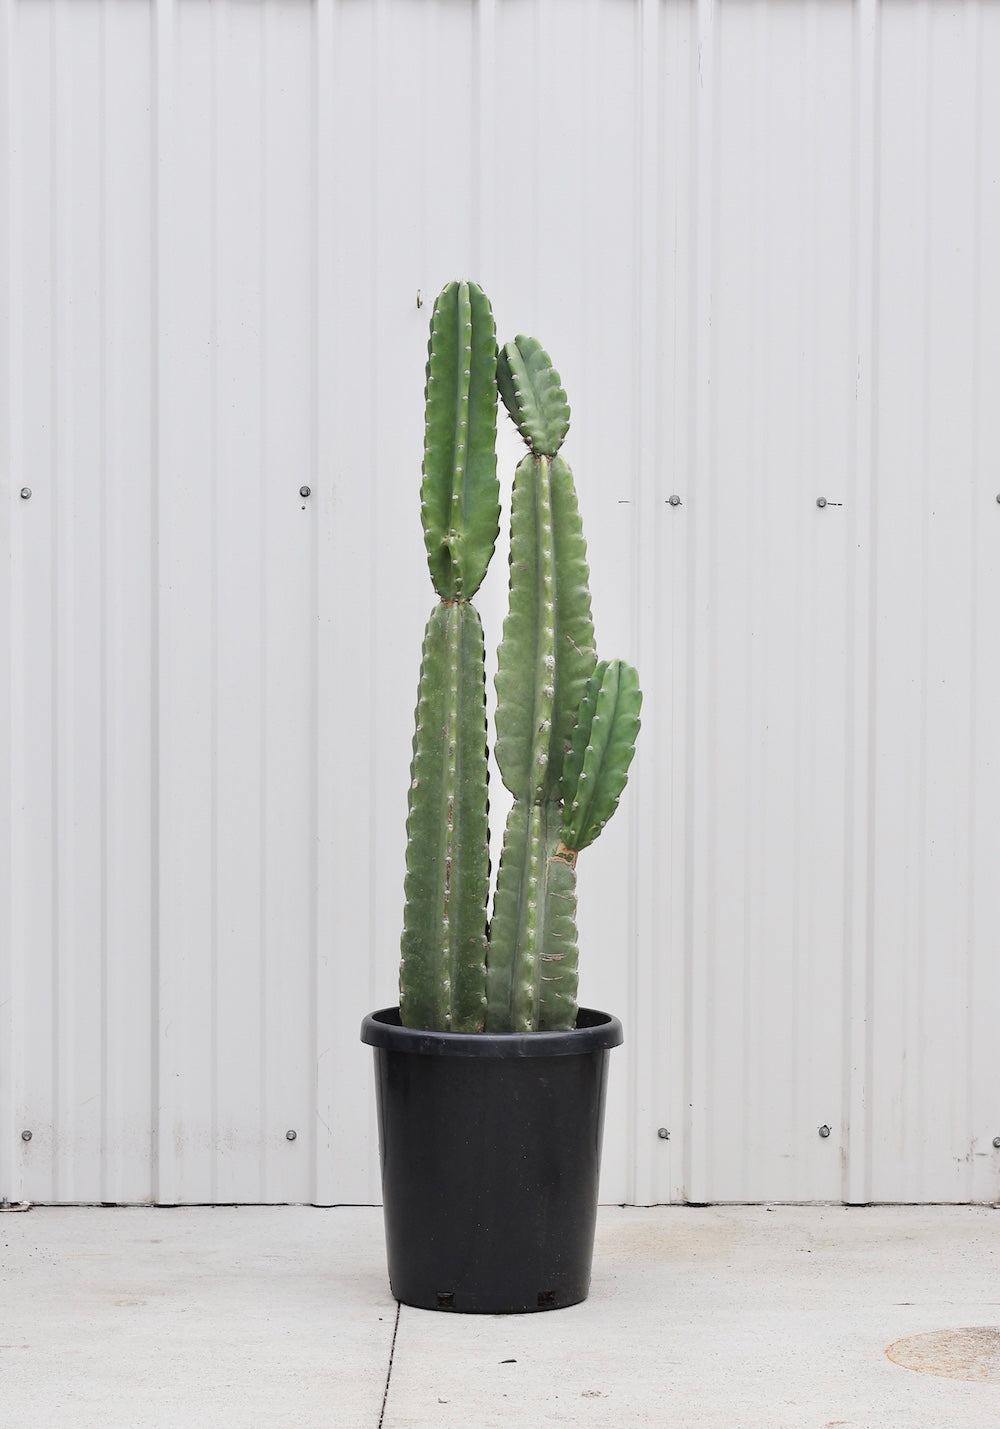 Cactus Cereus peruvianus